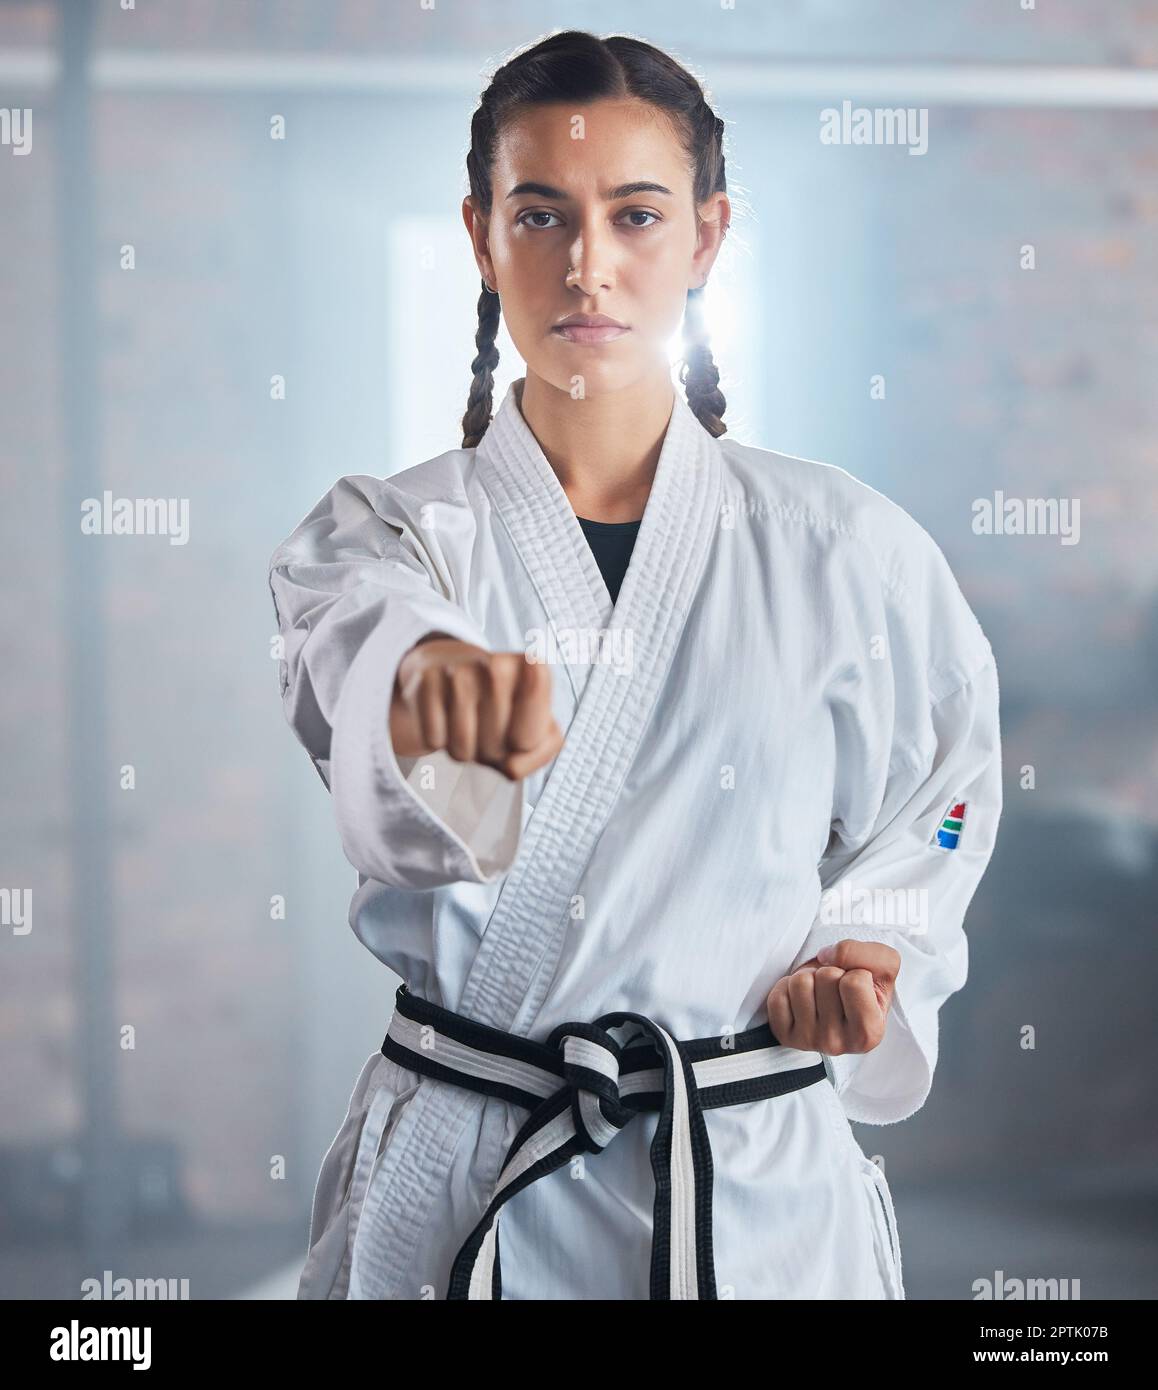 La mujer, el karate y el boxeo posan en el fitness taekwondo, entrenamiento  o entrenamiento para la competencia de cinturón negro, desafío de lucha o defensa  personal. Retrato, martí Fotografía de stock -